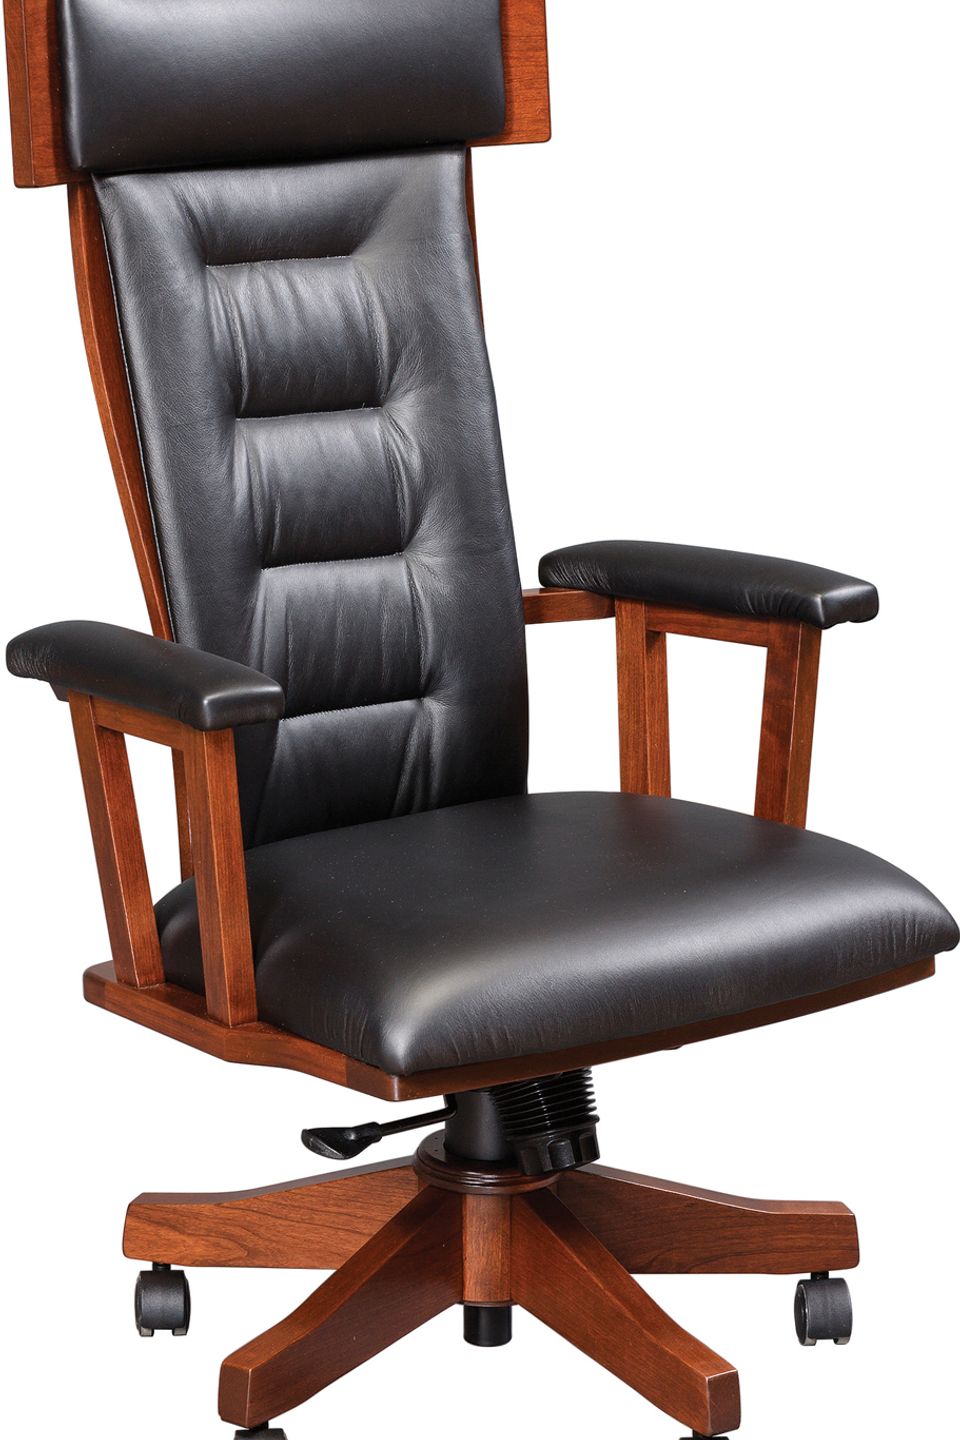 Br ldc 58 cherry desk chair cp